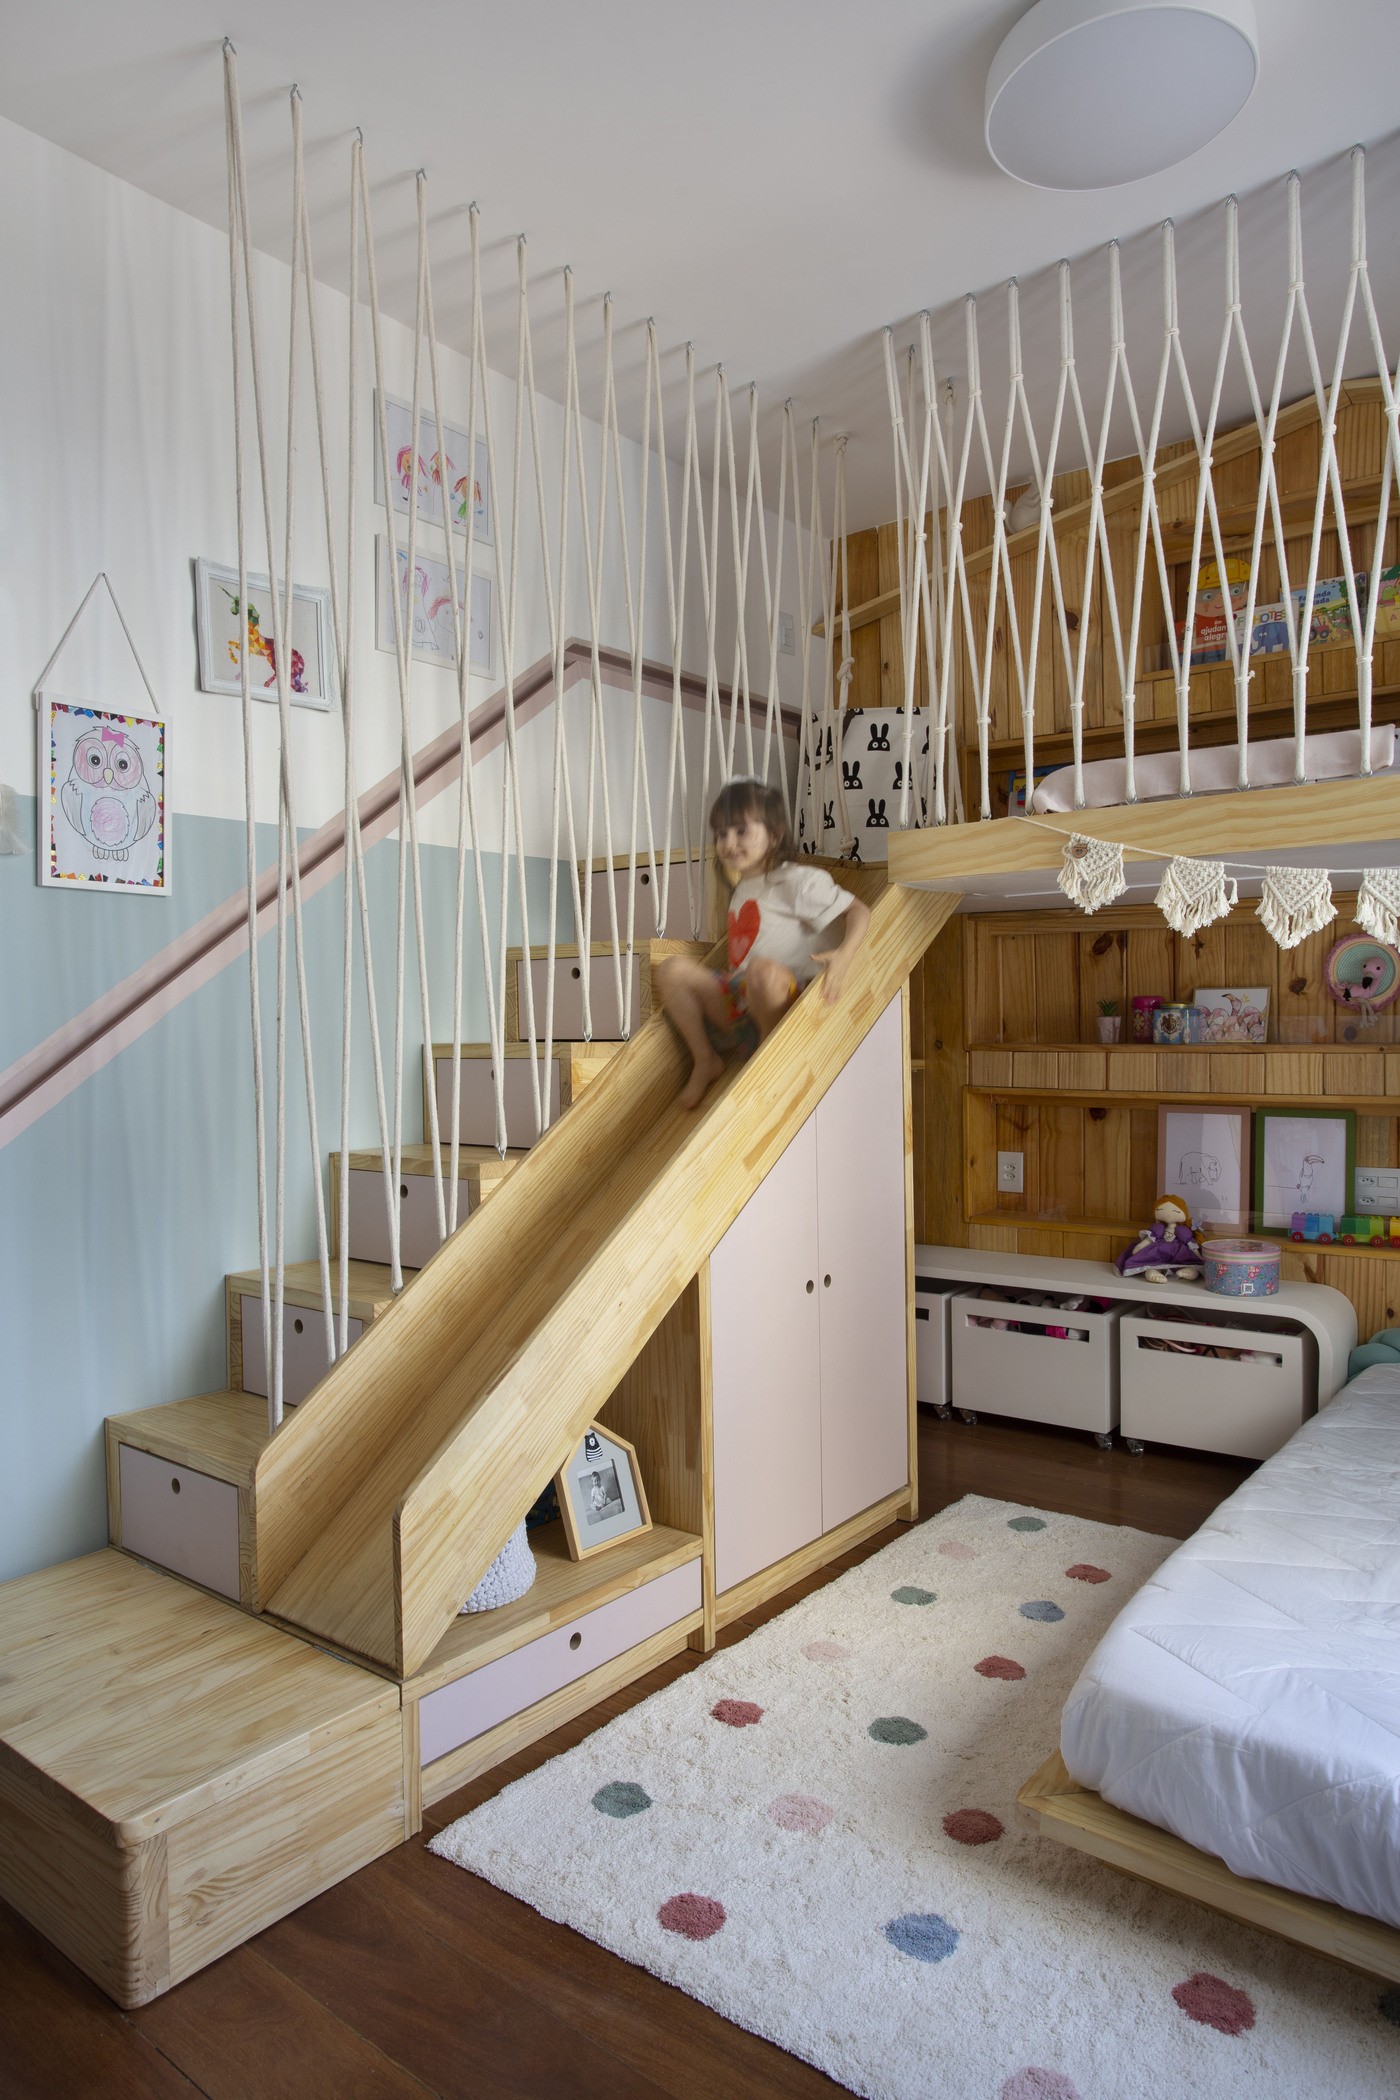 Décor do dia: quarto infantil com escorregador e marcenaria funcional (Foto: Denilson Machado/MCA Estúdio)